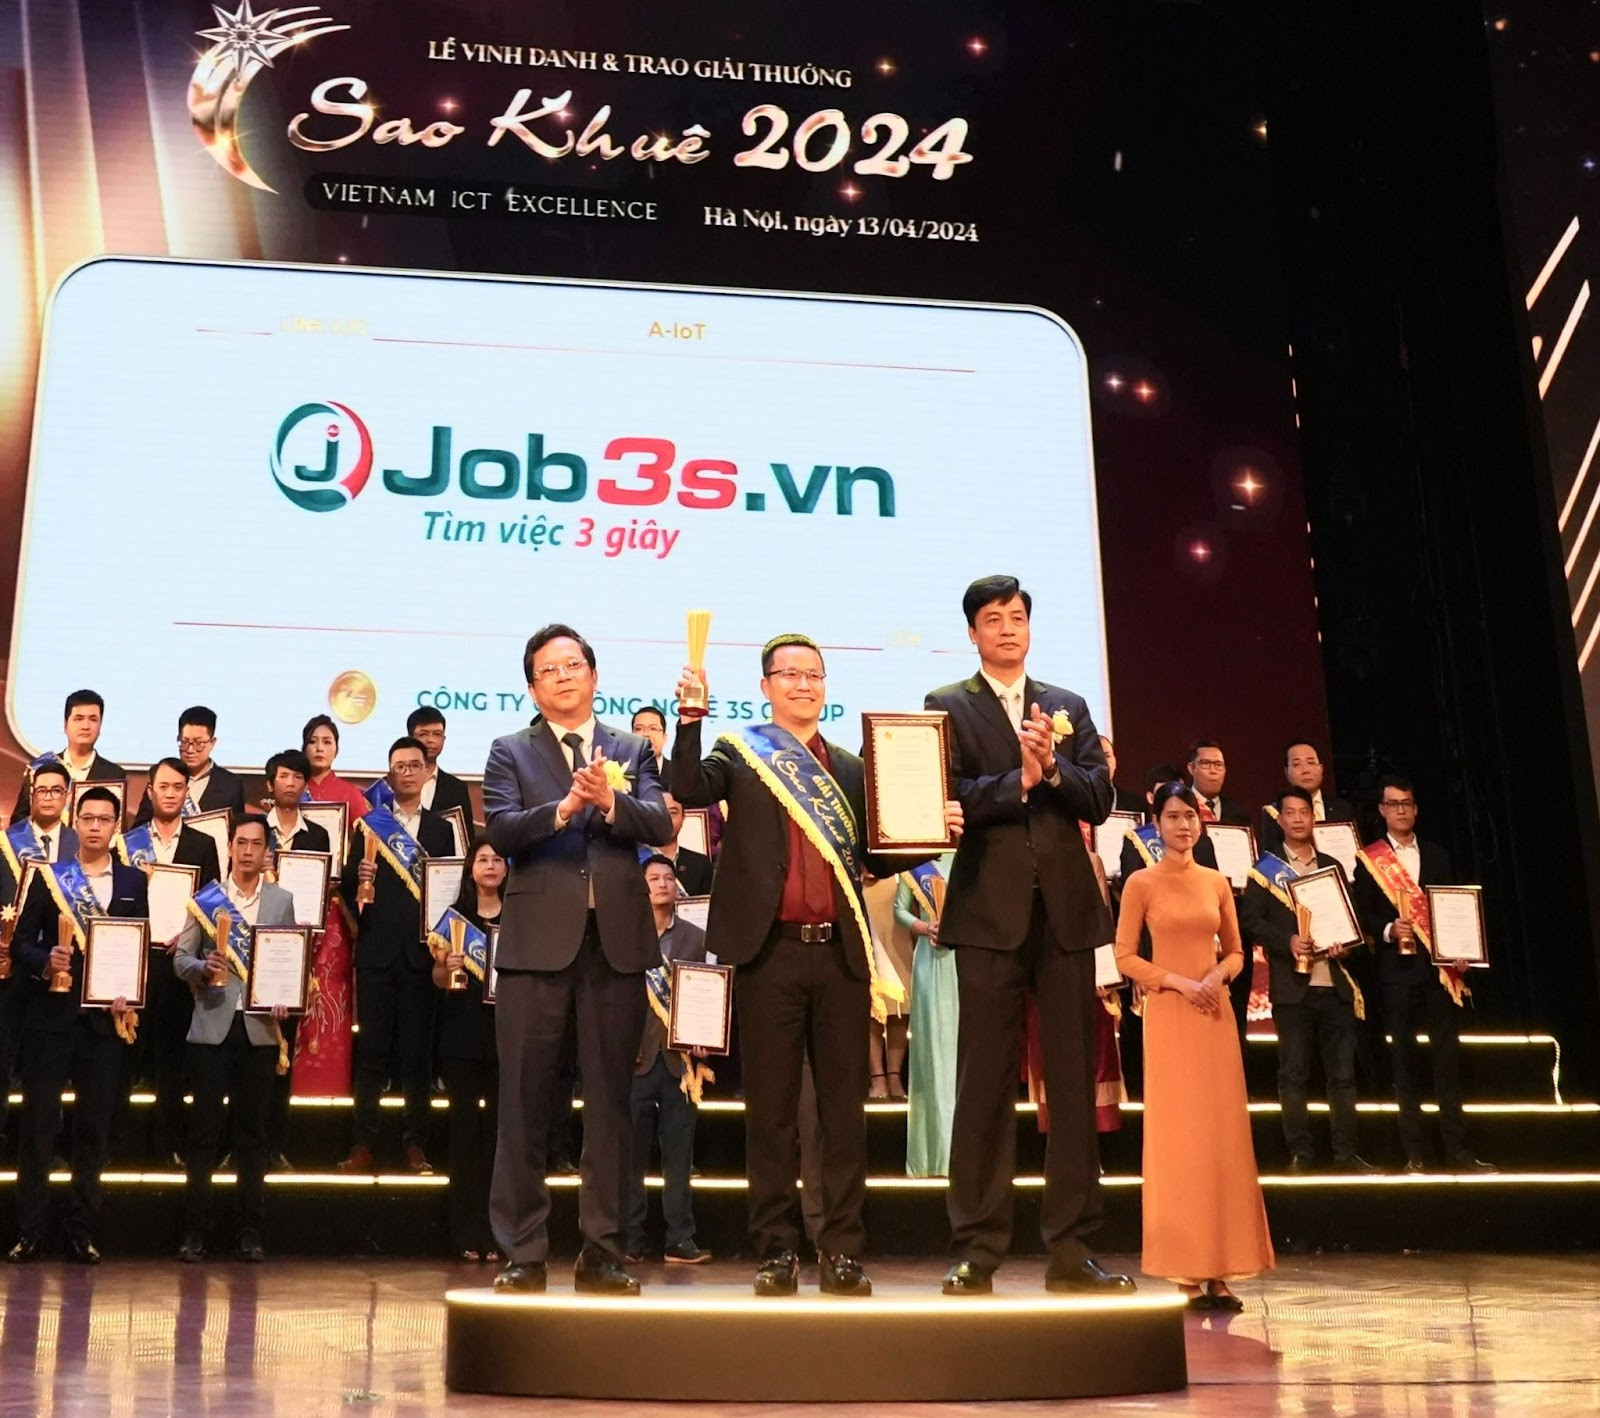 [Tin công nghệ] Nền tảng tuyển dụng việc làm Job3s.vn nhận giải thưởng Sao Khuê 2024